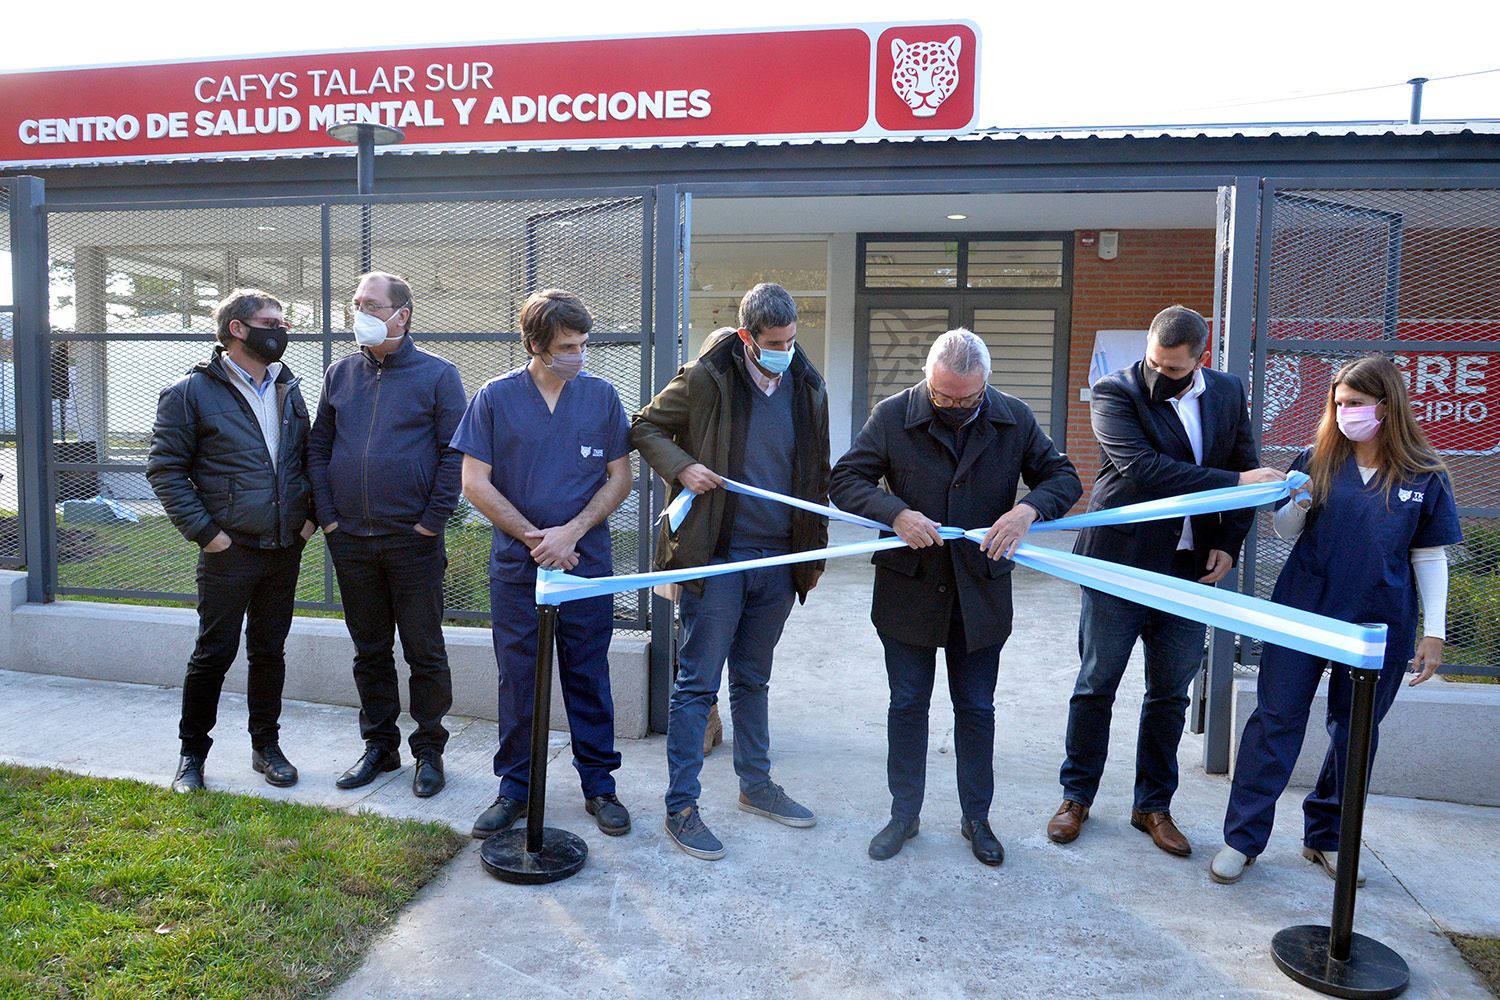 Se inauguró el CAFYS y Centro de Salud Mental y Adicciones en Tigre: "Fue un pedido de los vecinos", expresó Zamora